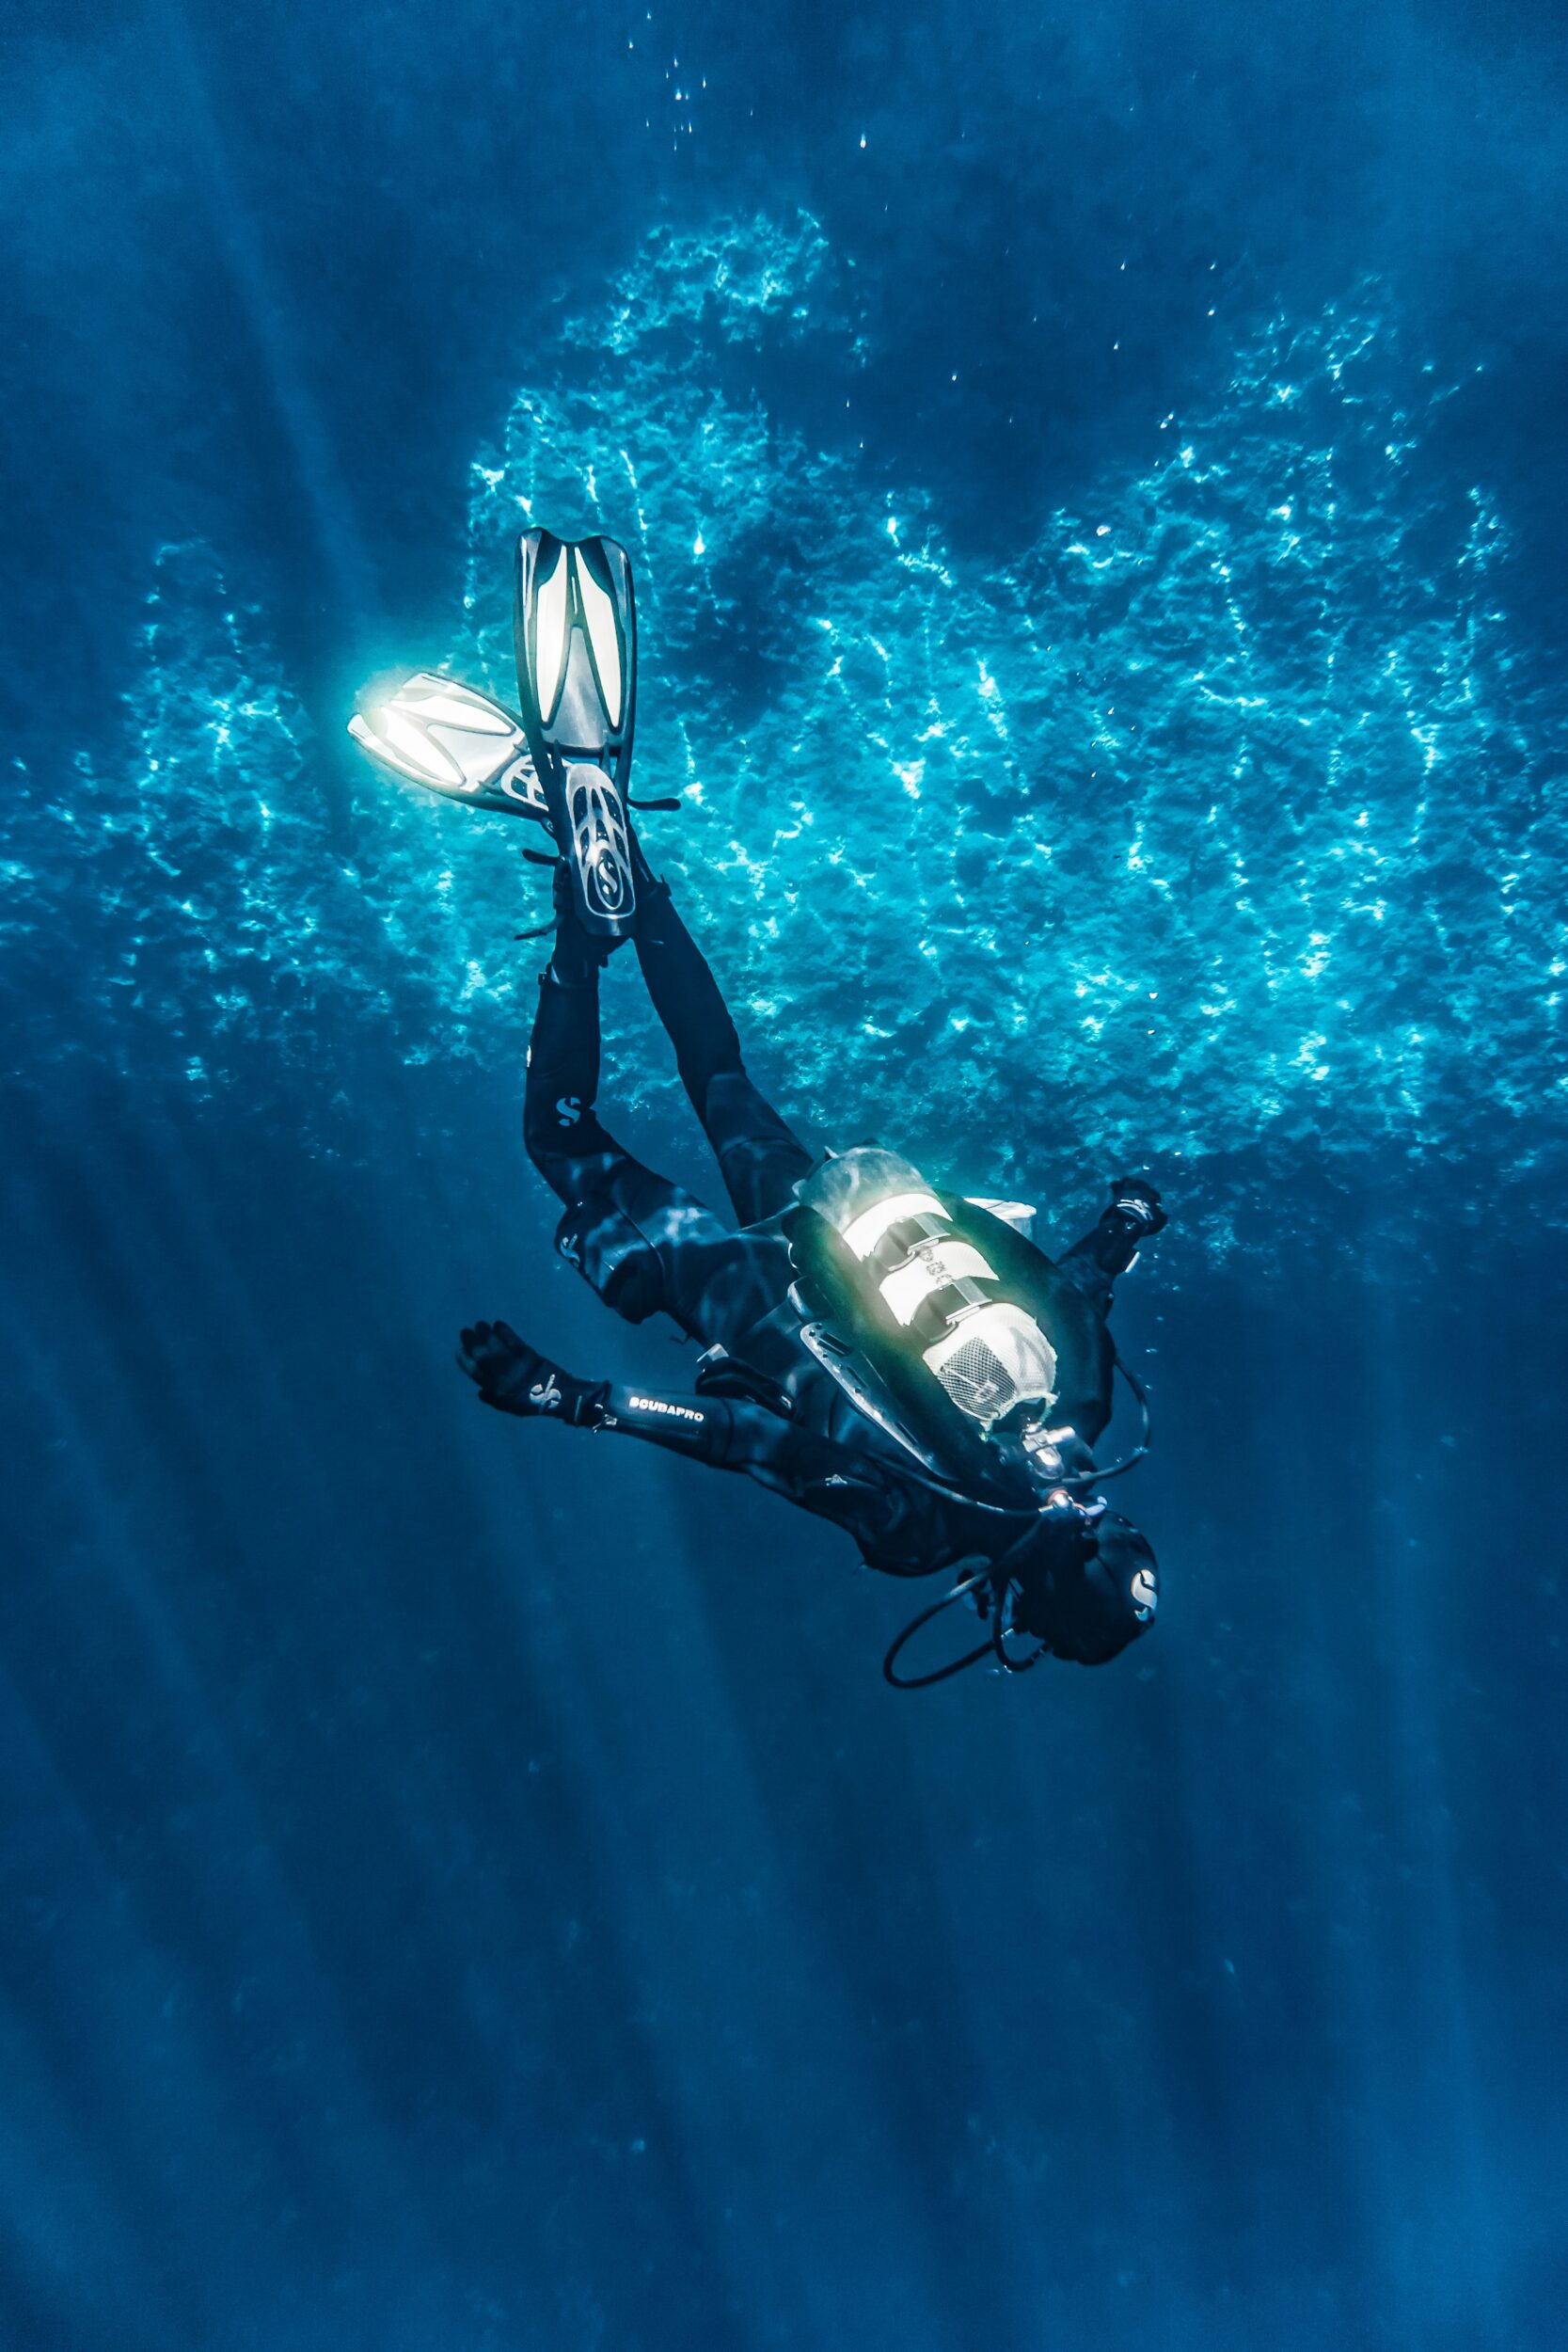 Når du dykker, er det vigtigt, at du har et dykkerur på. Det er først og fremmest for din egen sikkerhed. Pressefoto.